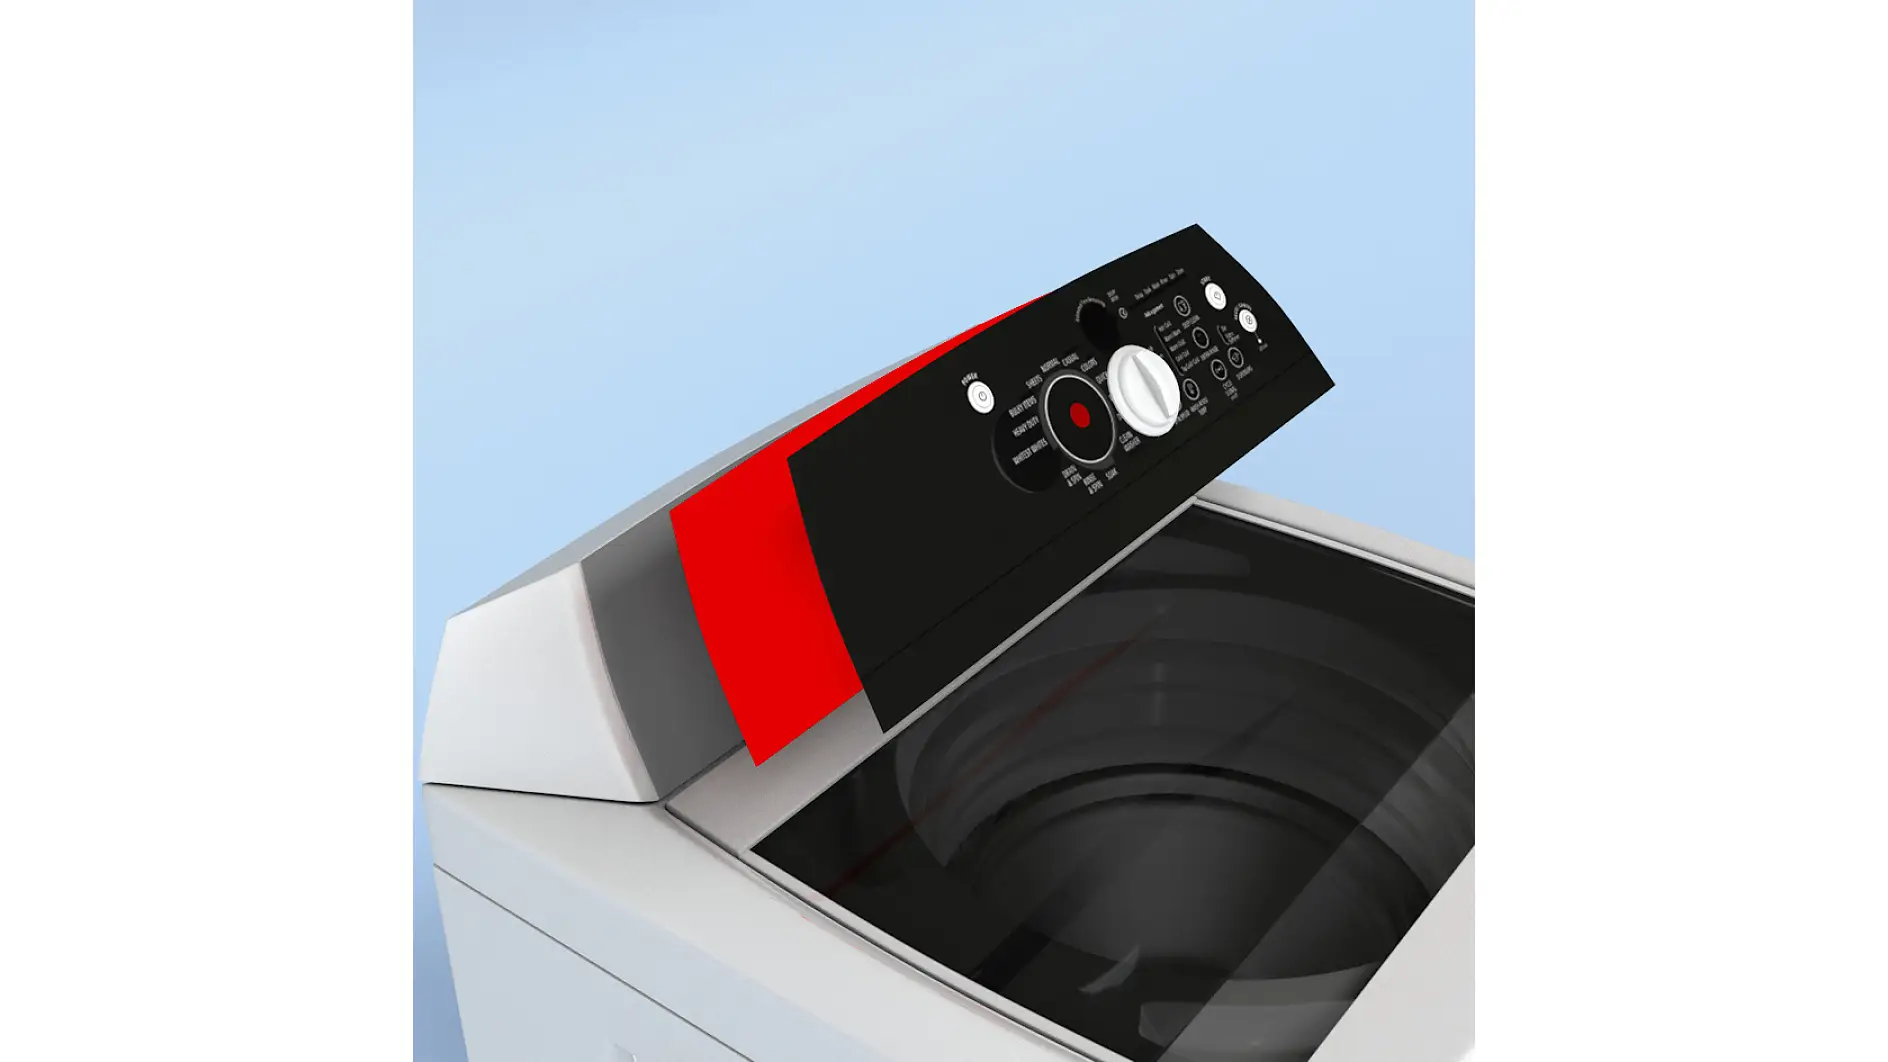 Os interruptores de membrana são montados em máquinas de lavar com fita adesiva